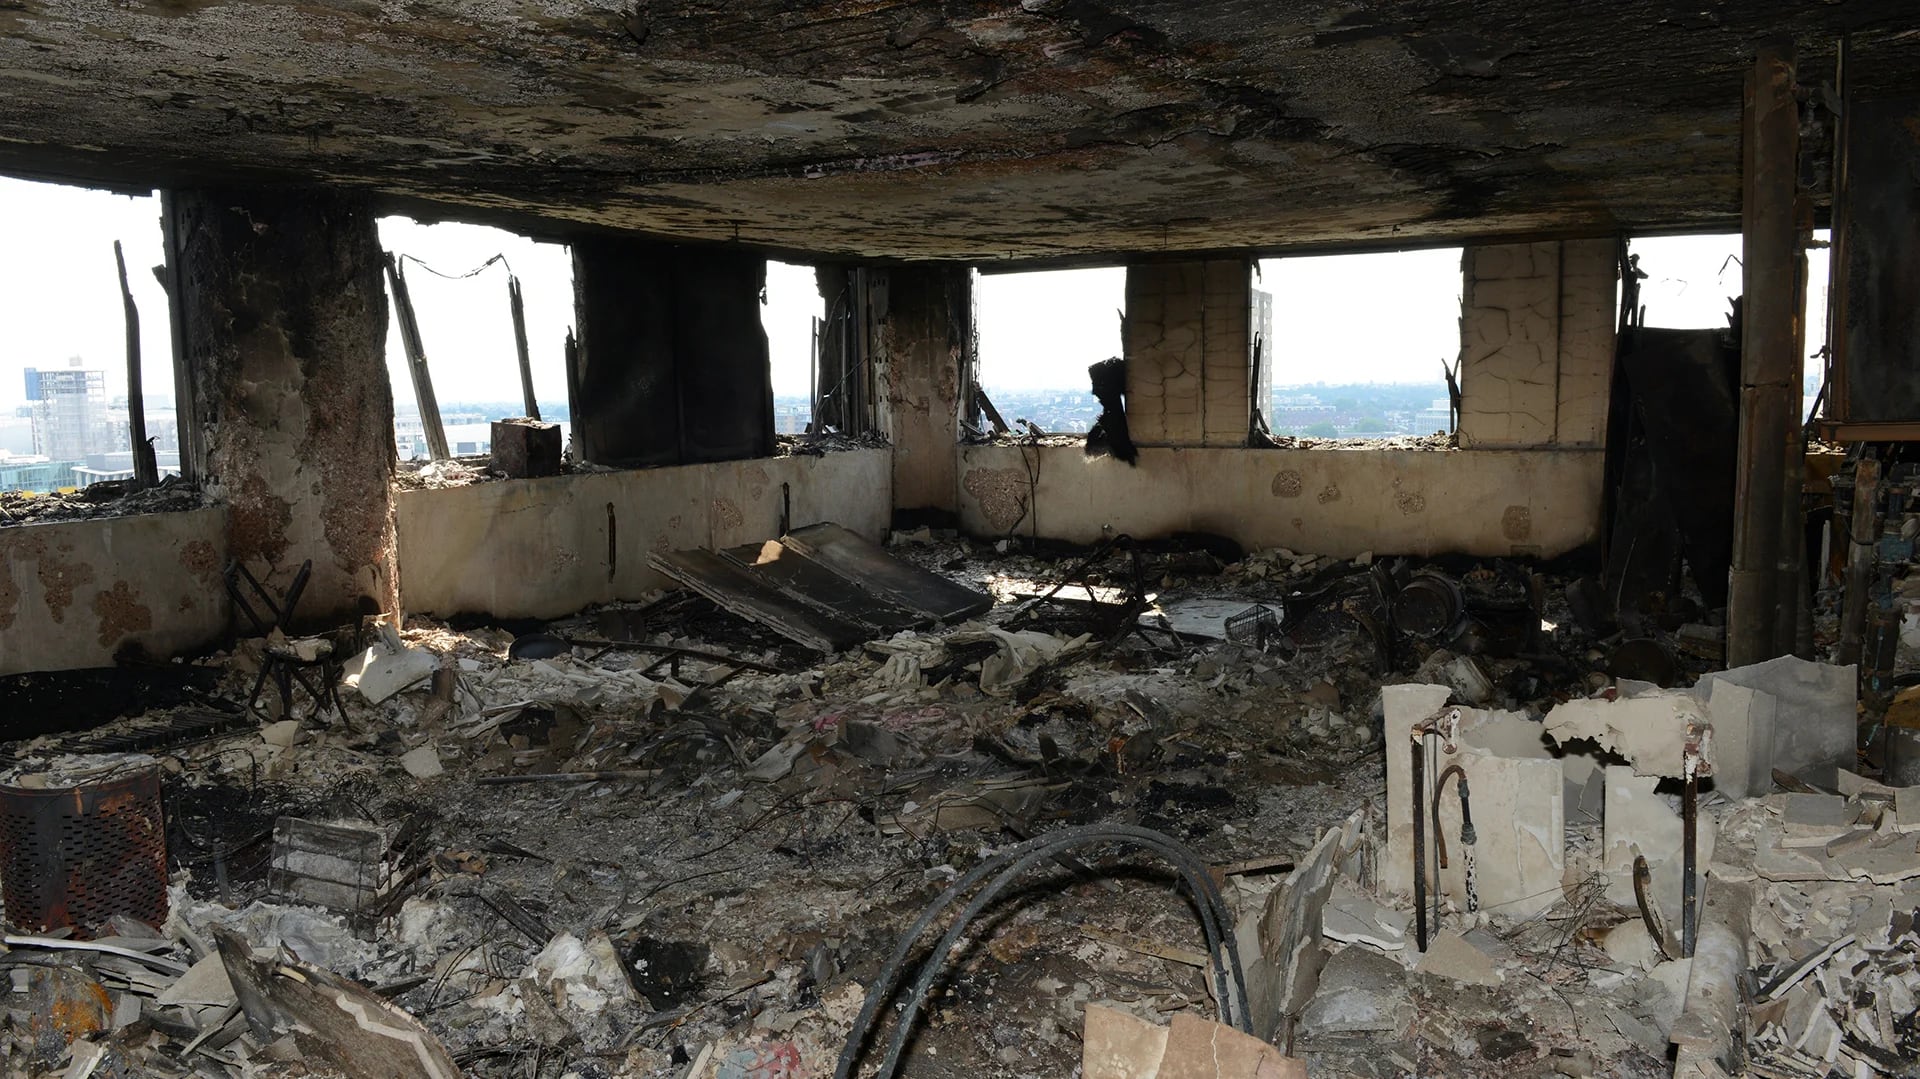 Rawan aseguró que su familia perdió todas sus pertenencias en el incendio (Reuters)